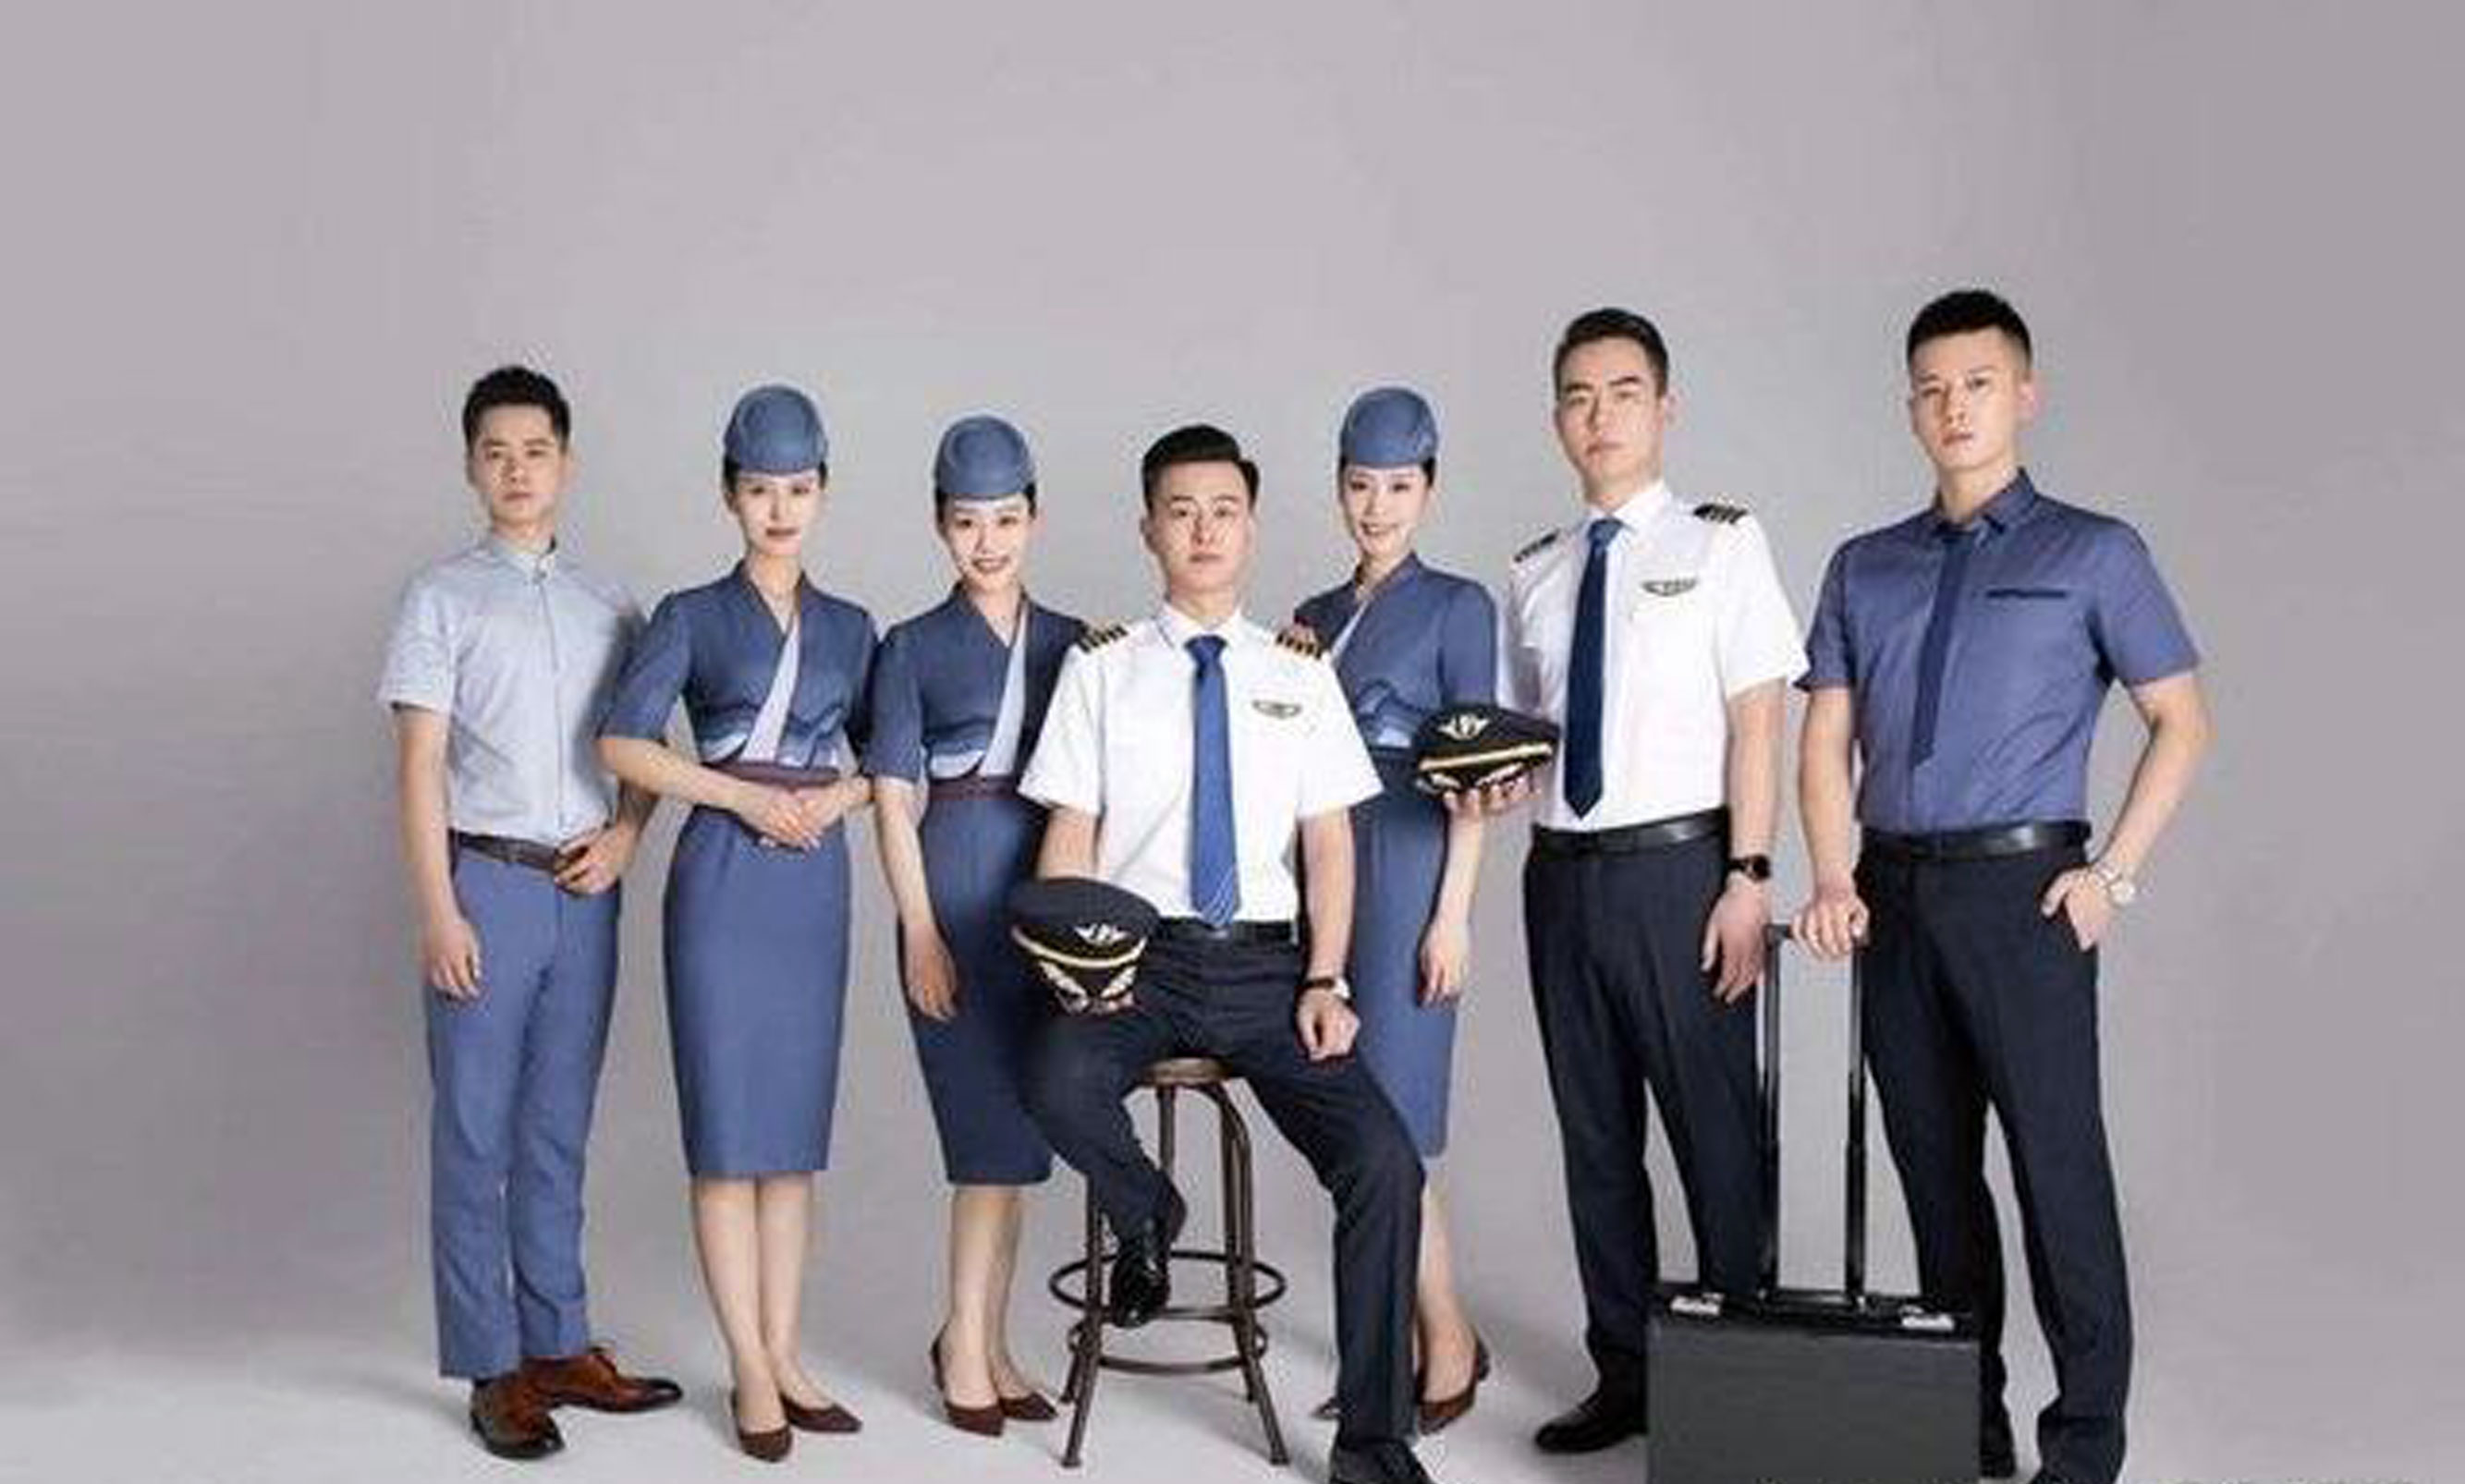 亚洲航空空姐制服图片,各个航空空姐制服图片-工作服厂家